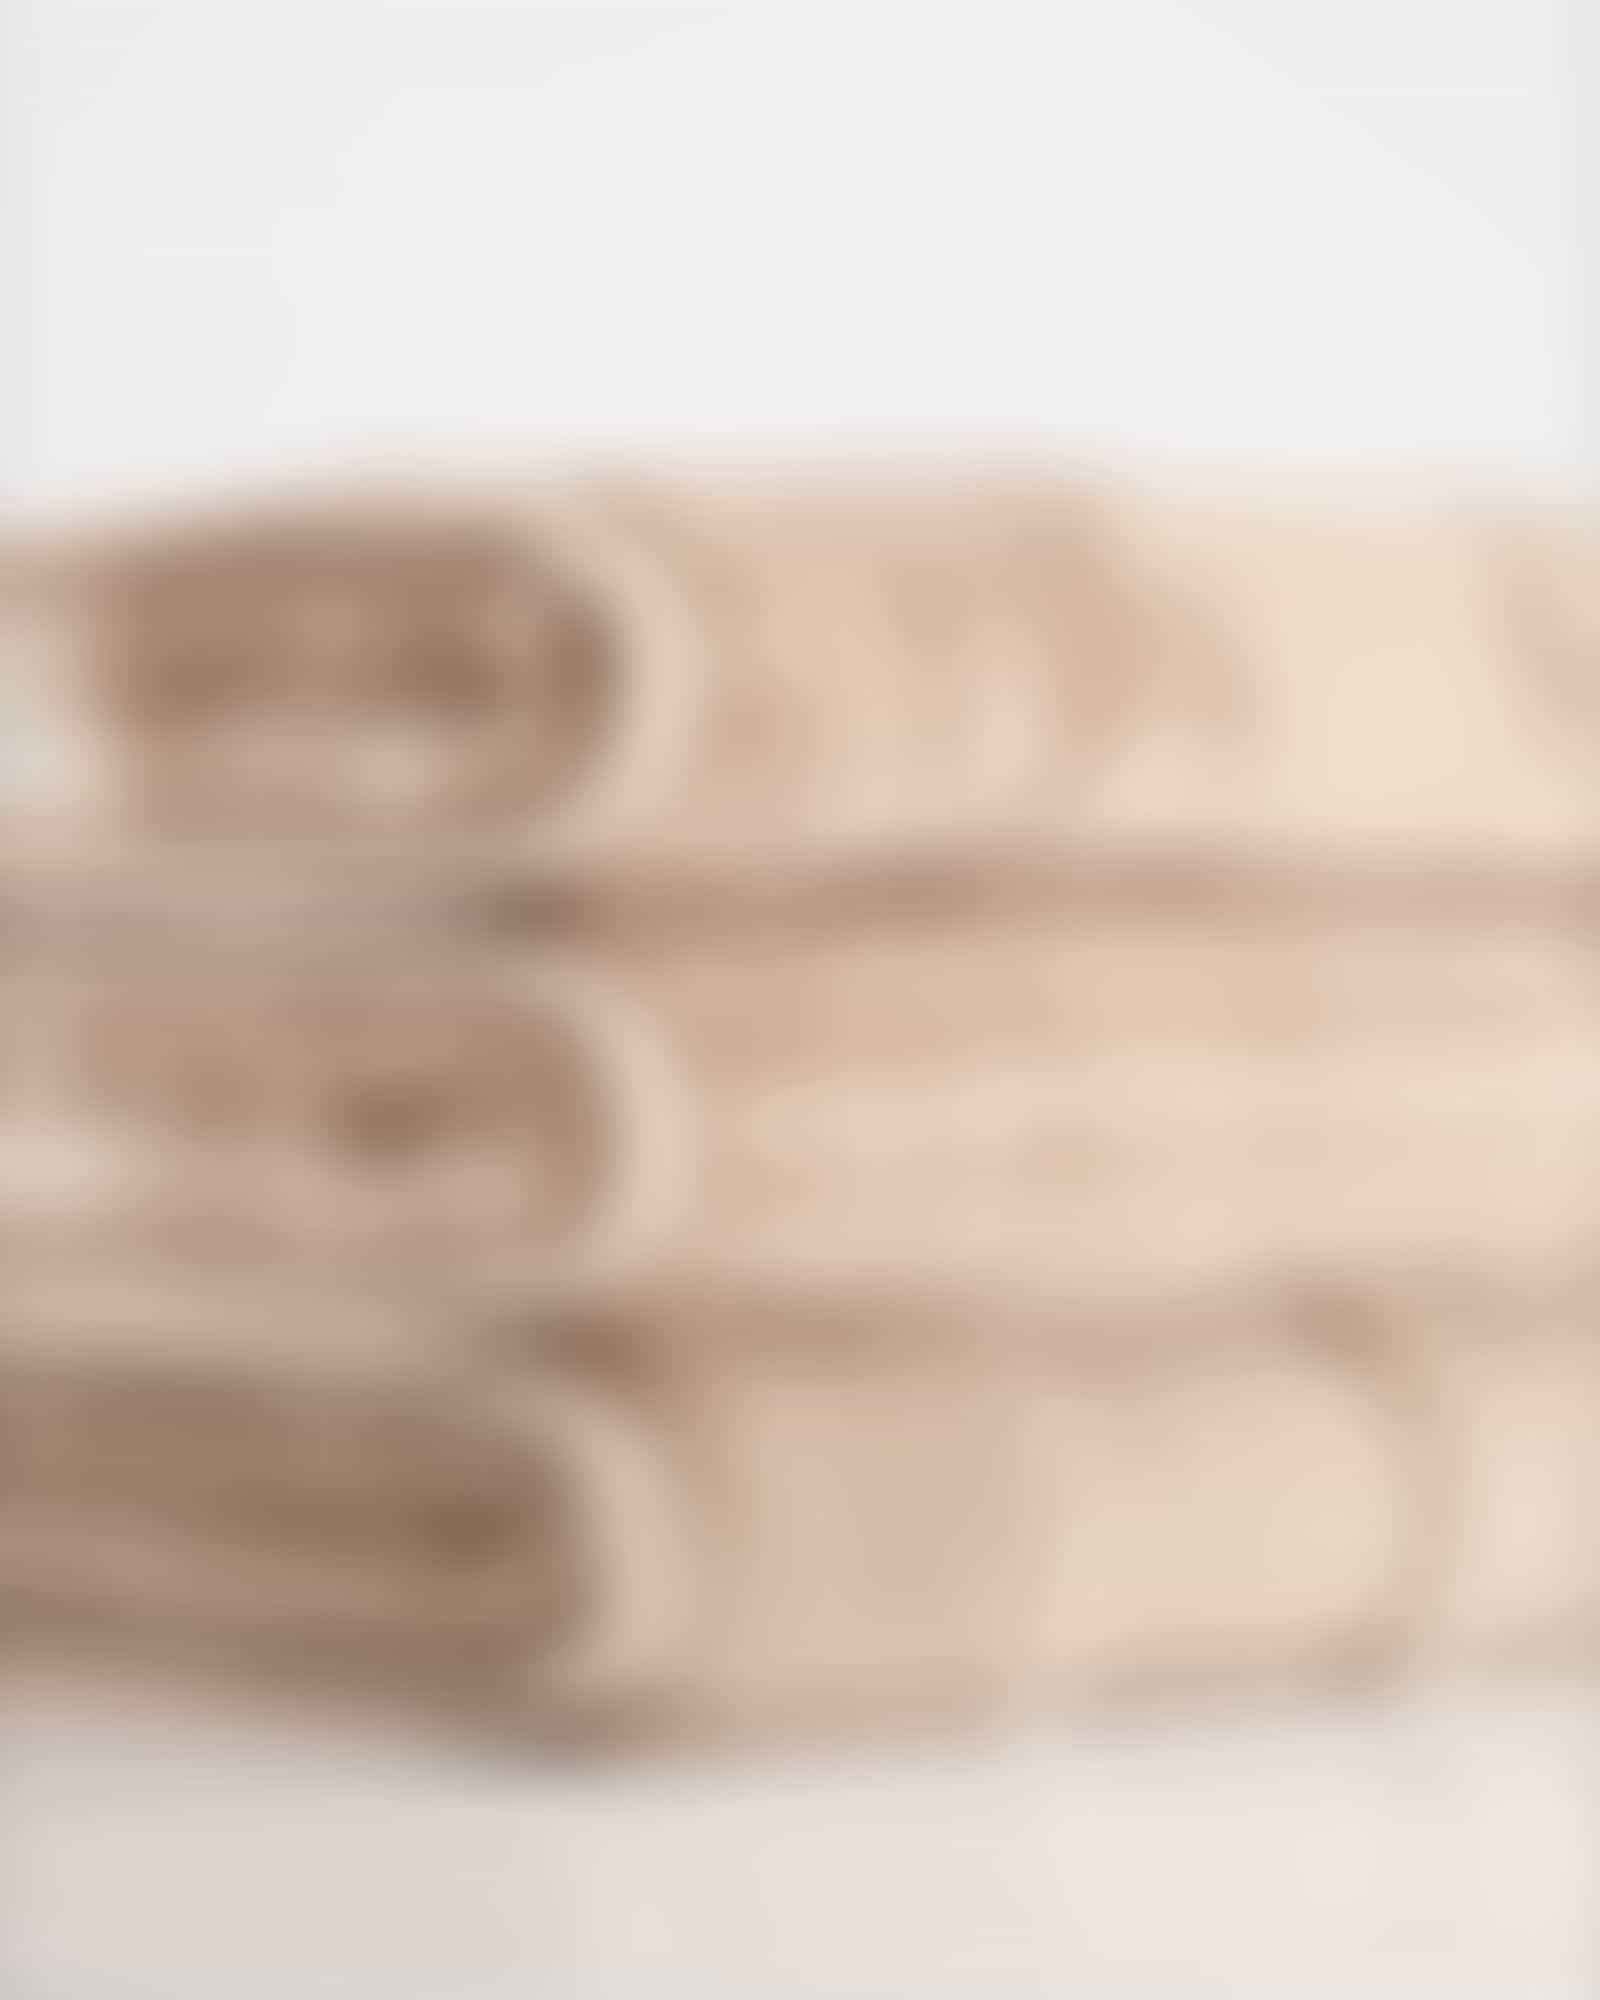 Cawö - Noblesse Cashmere Streifen 1056 - Farbe: sand - 33 Gästetuch 30x50 cm